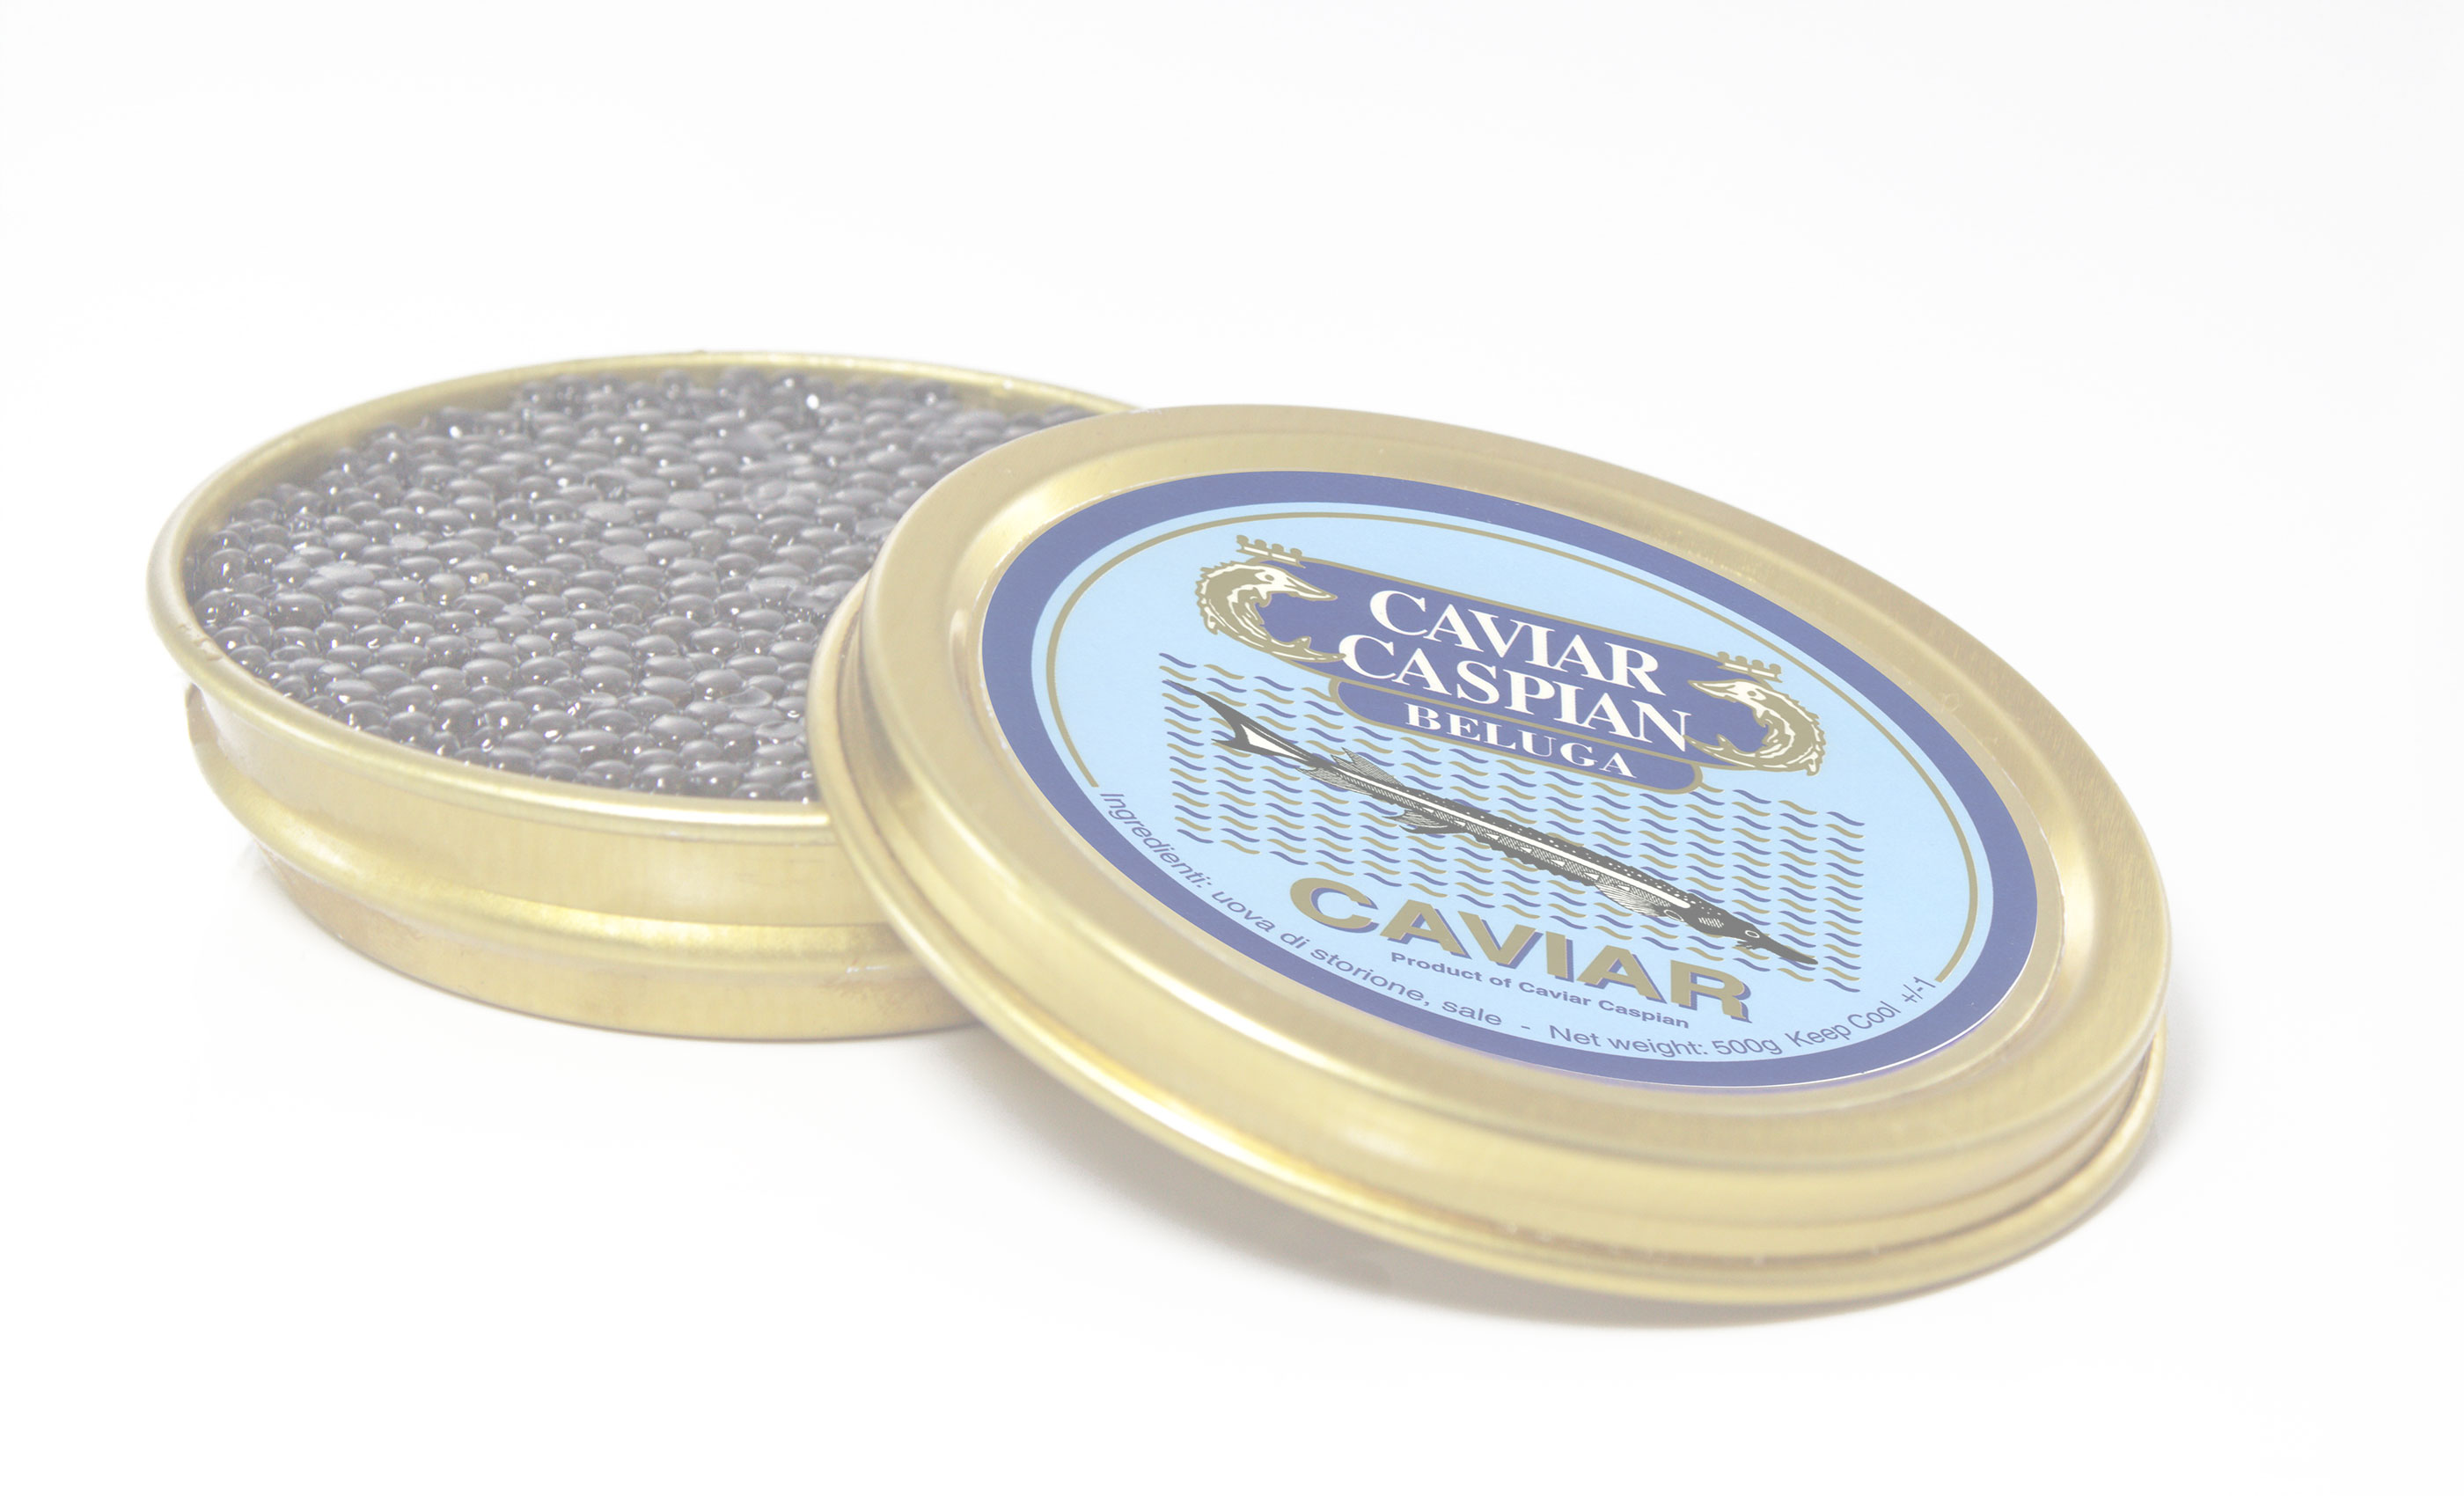 Caviar Caspian